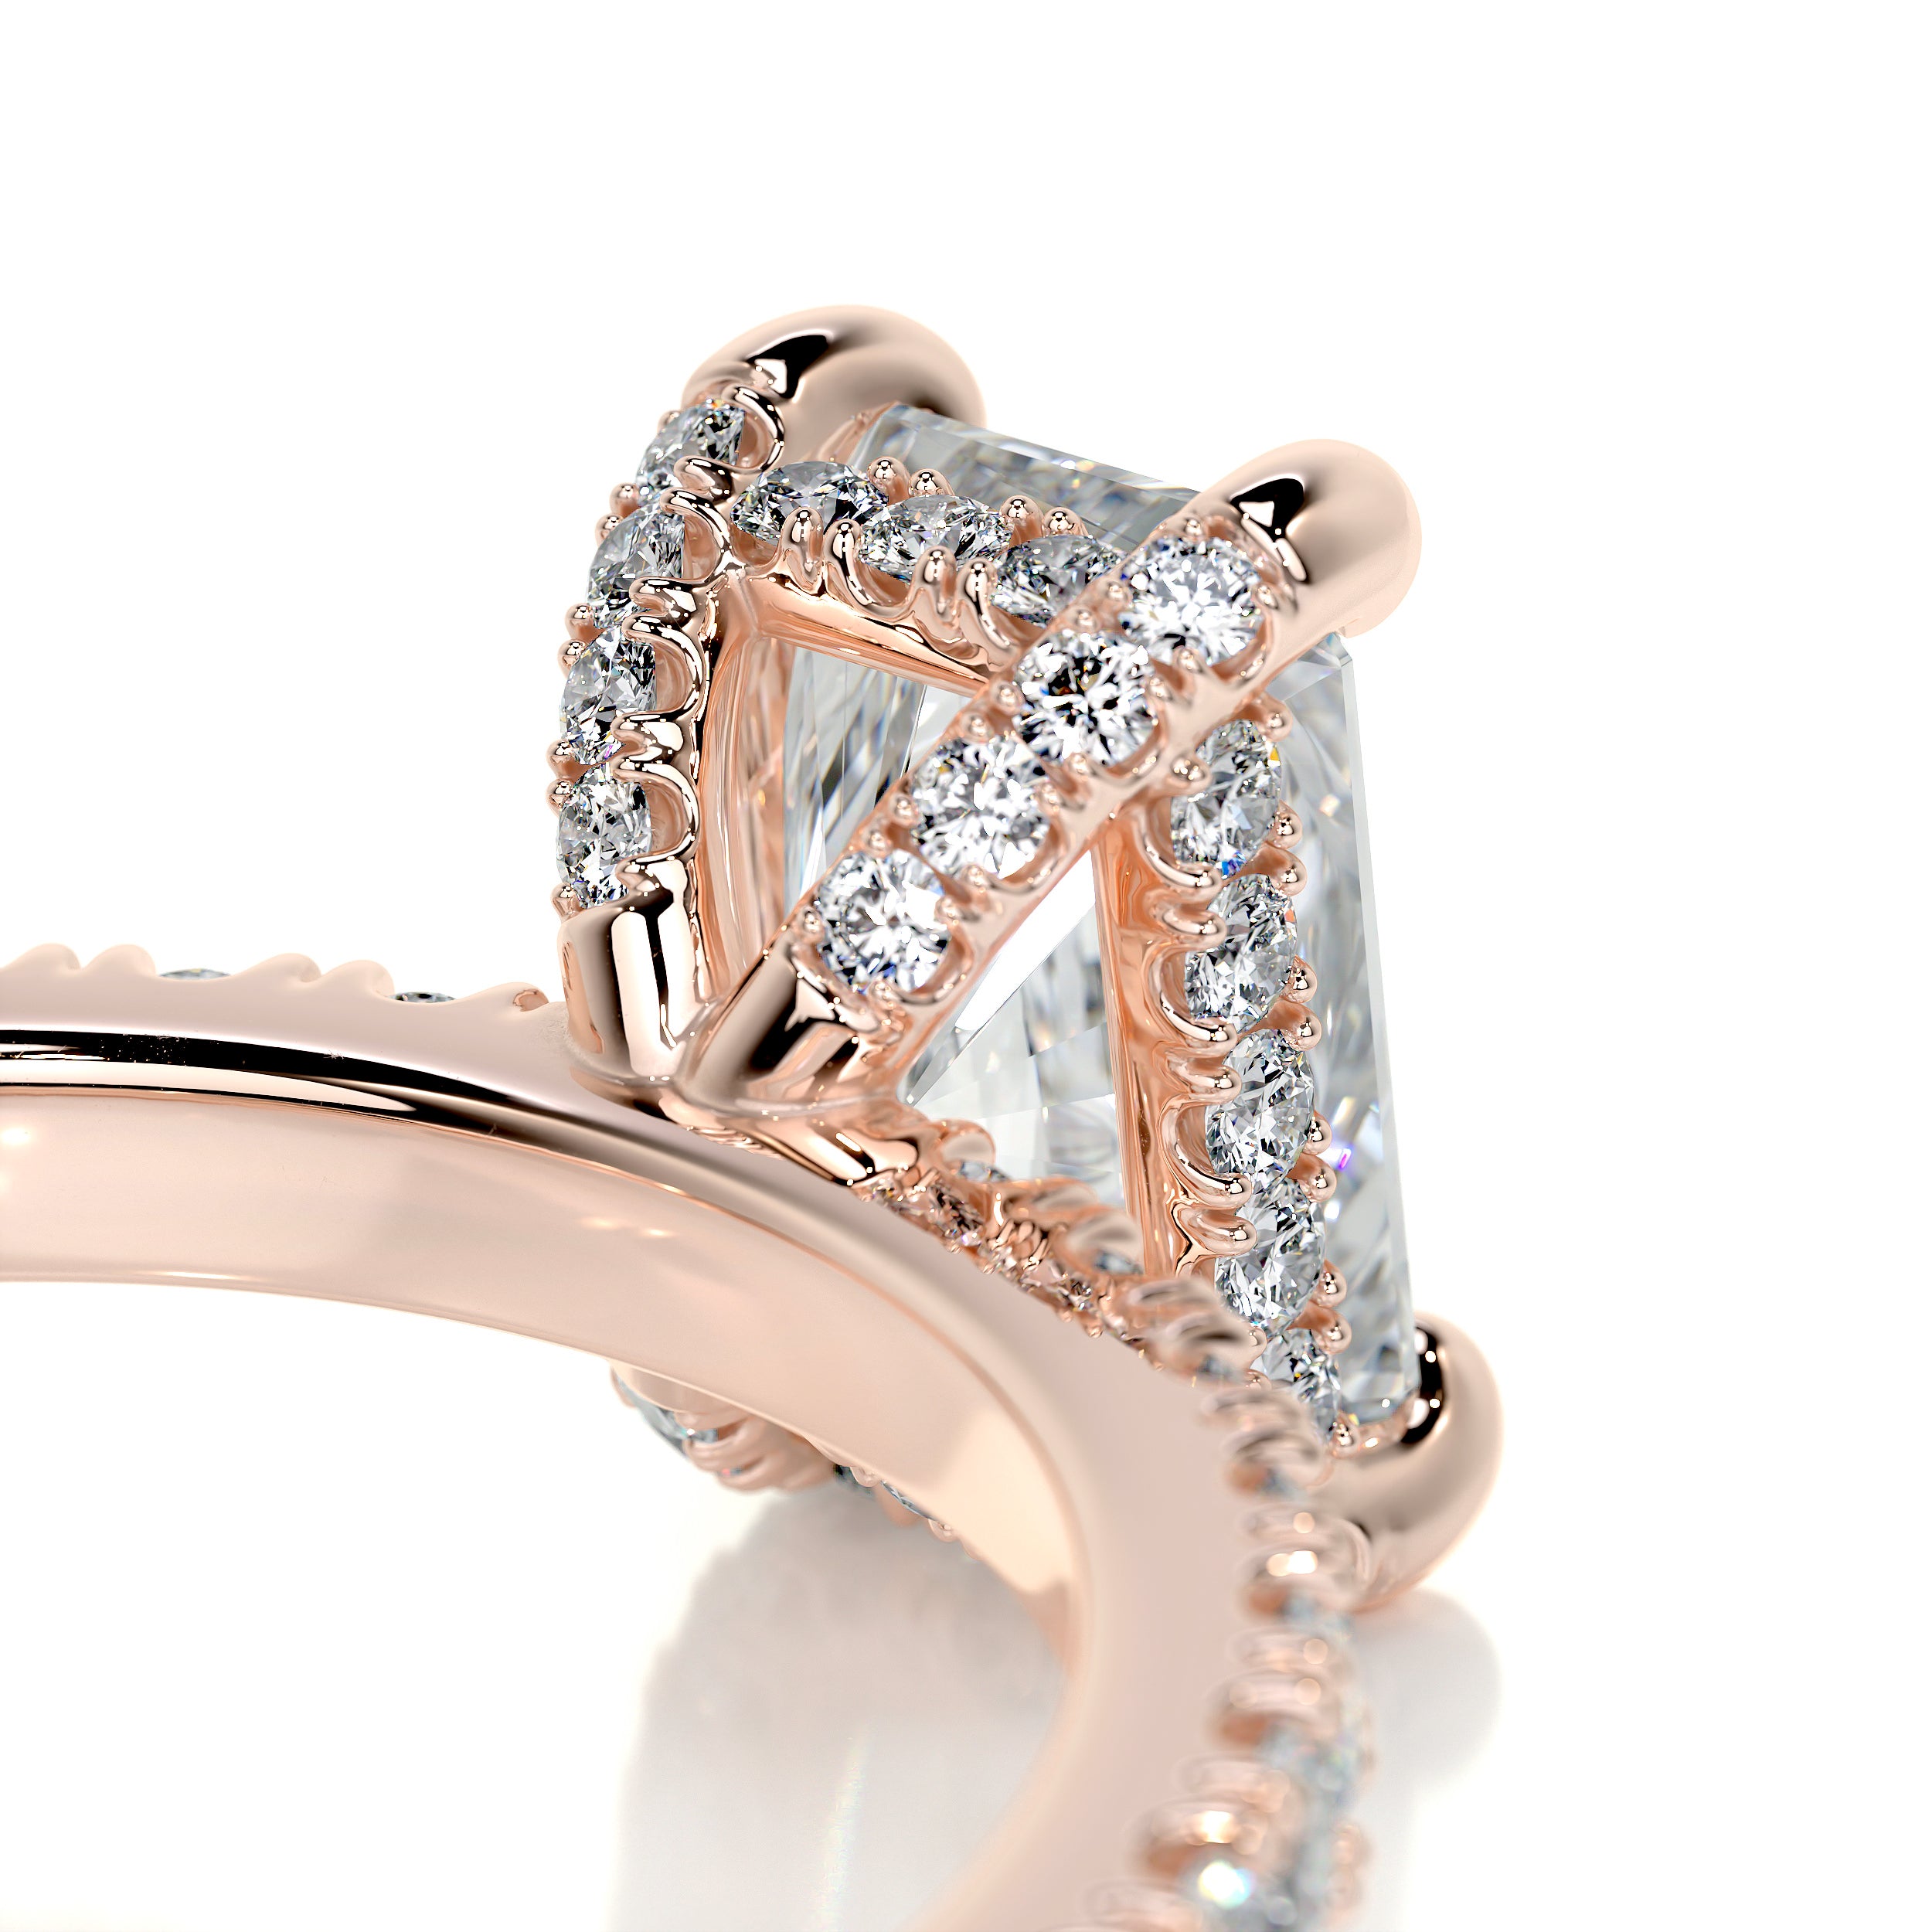 Deborah Diamond Engagement Ring -14K Rose Gold